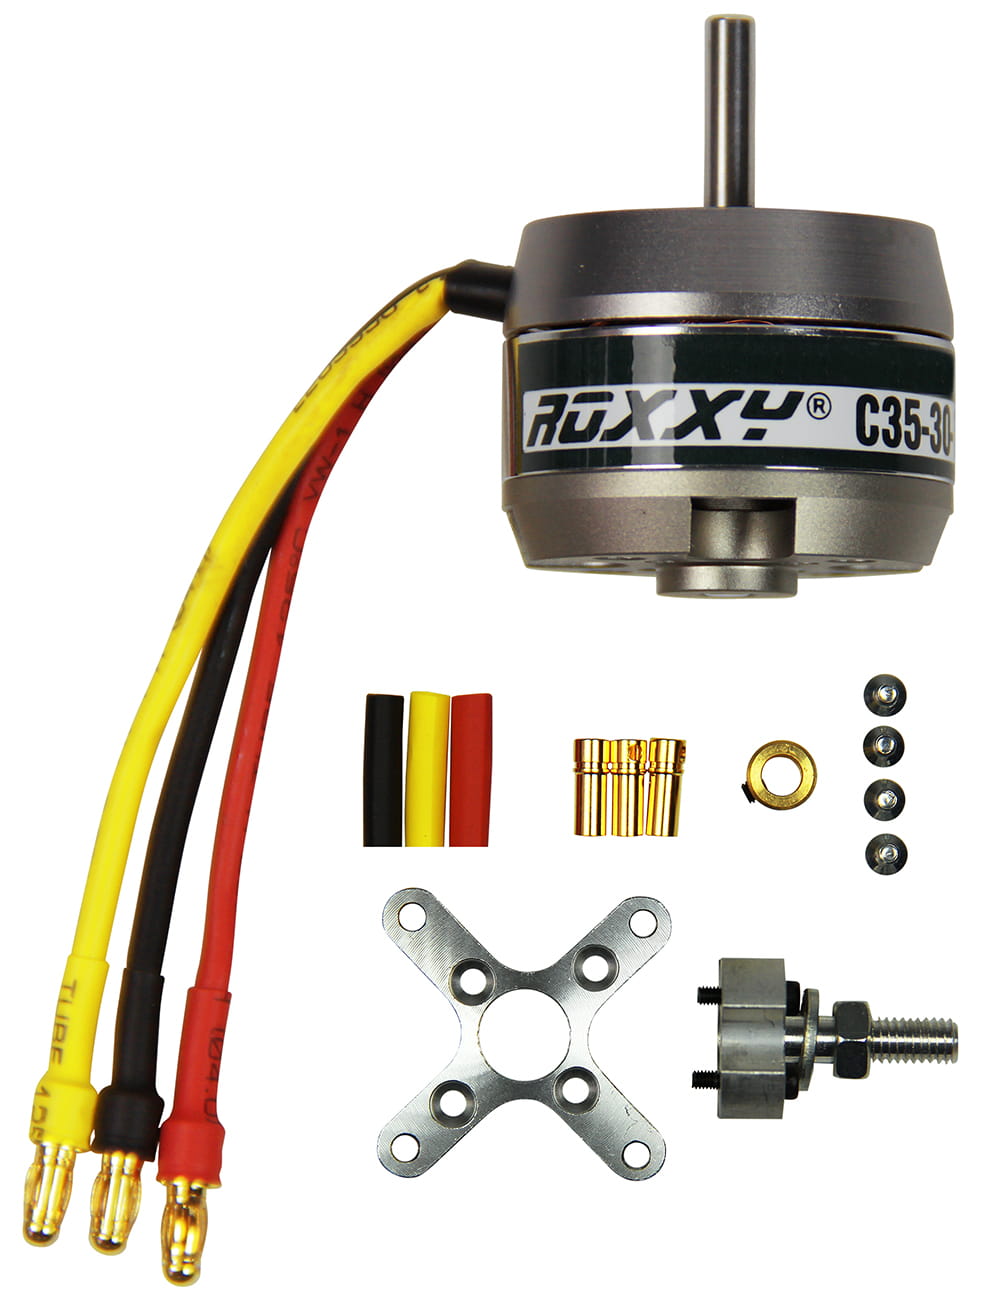 Multiplex ROXXY Brushless Motor BL Outrunner C35-30-500kV